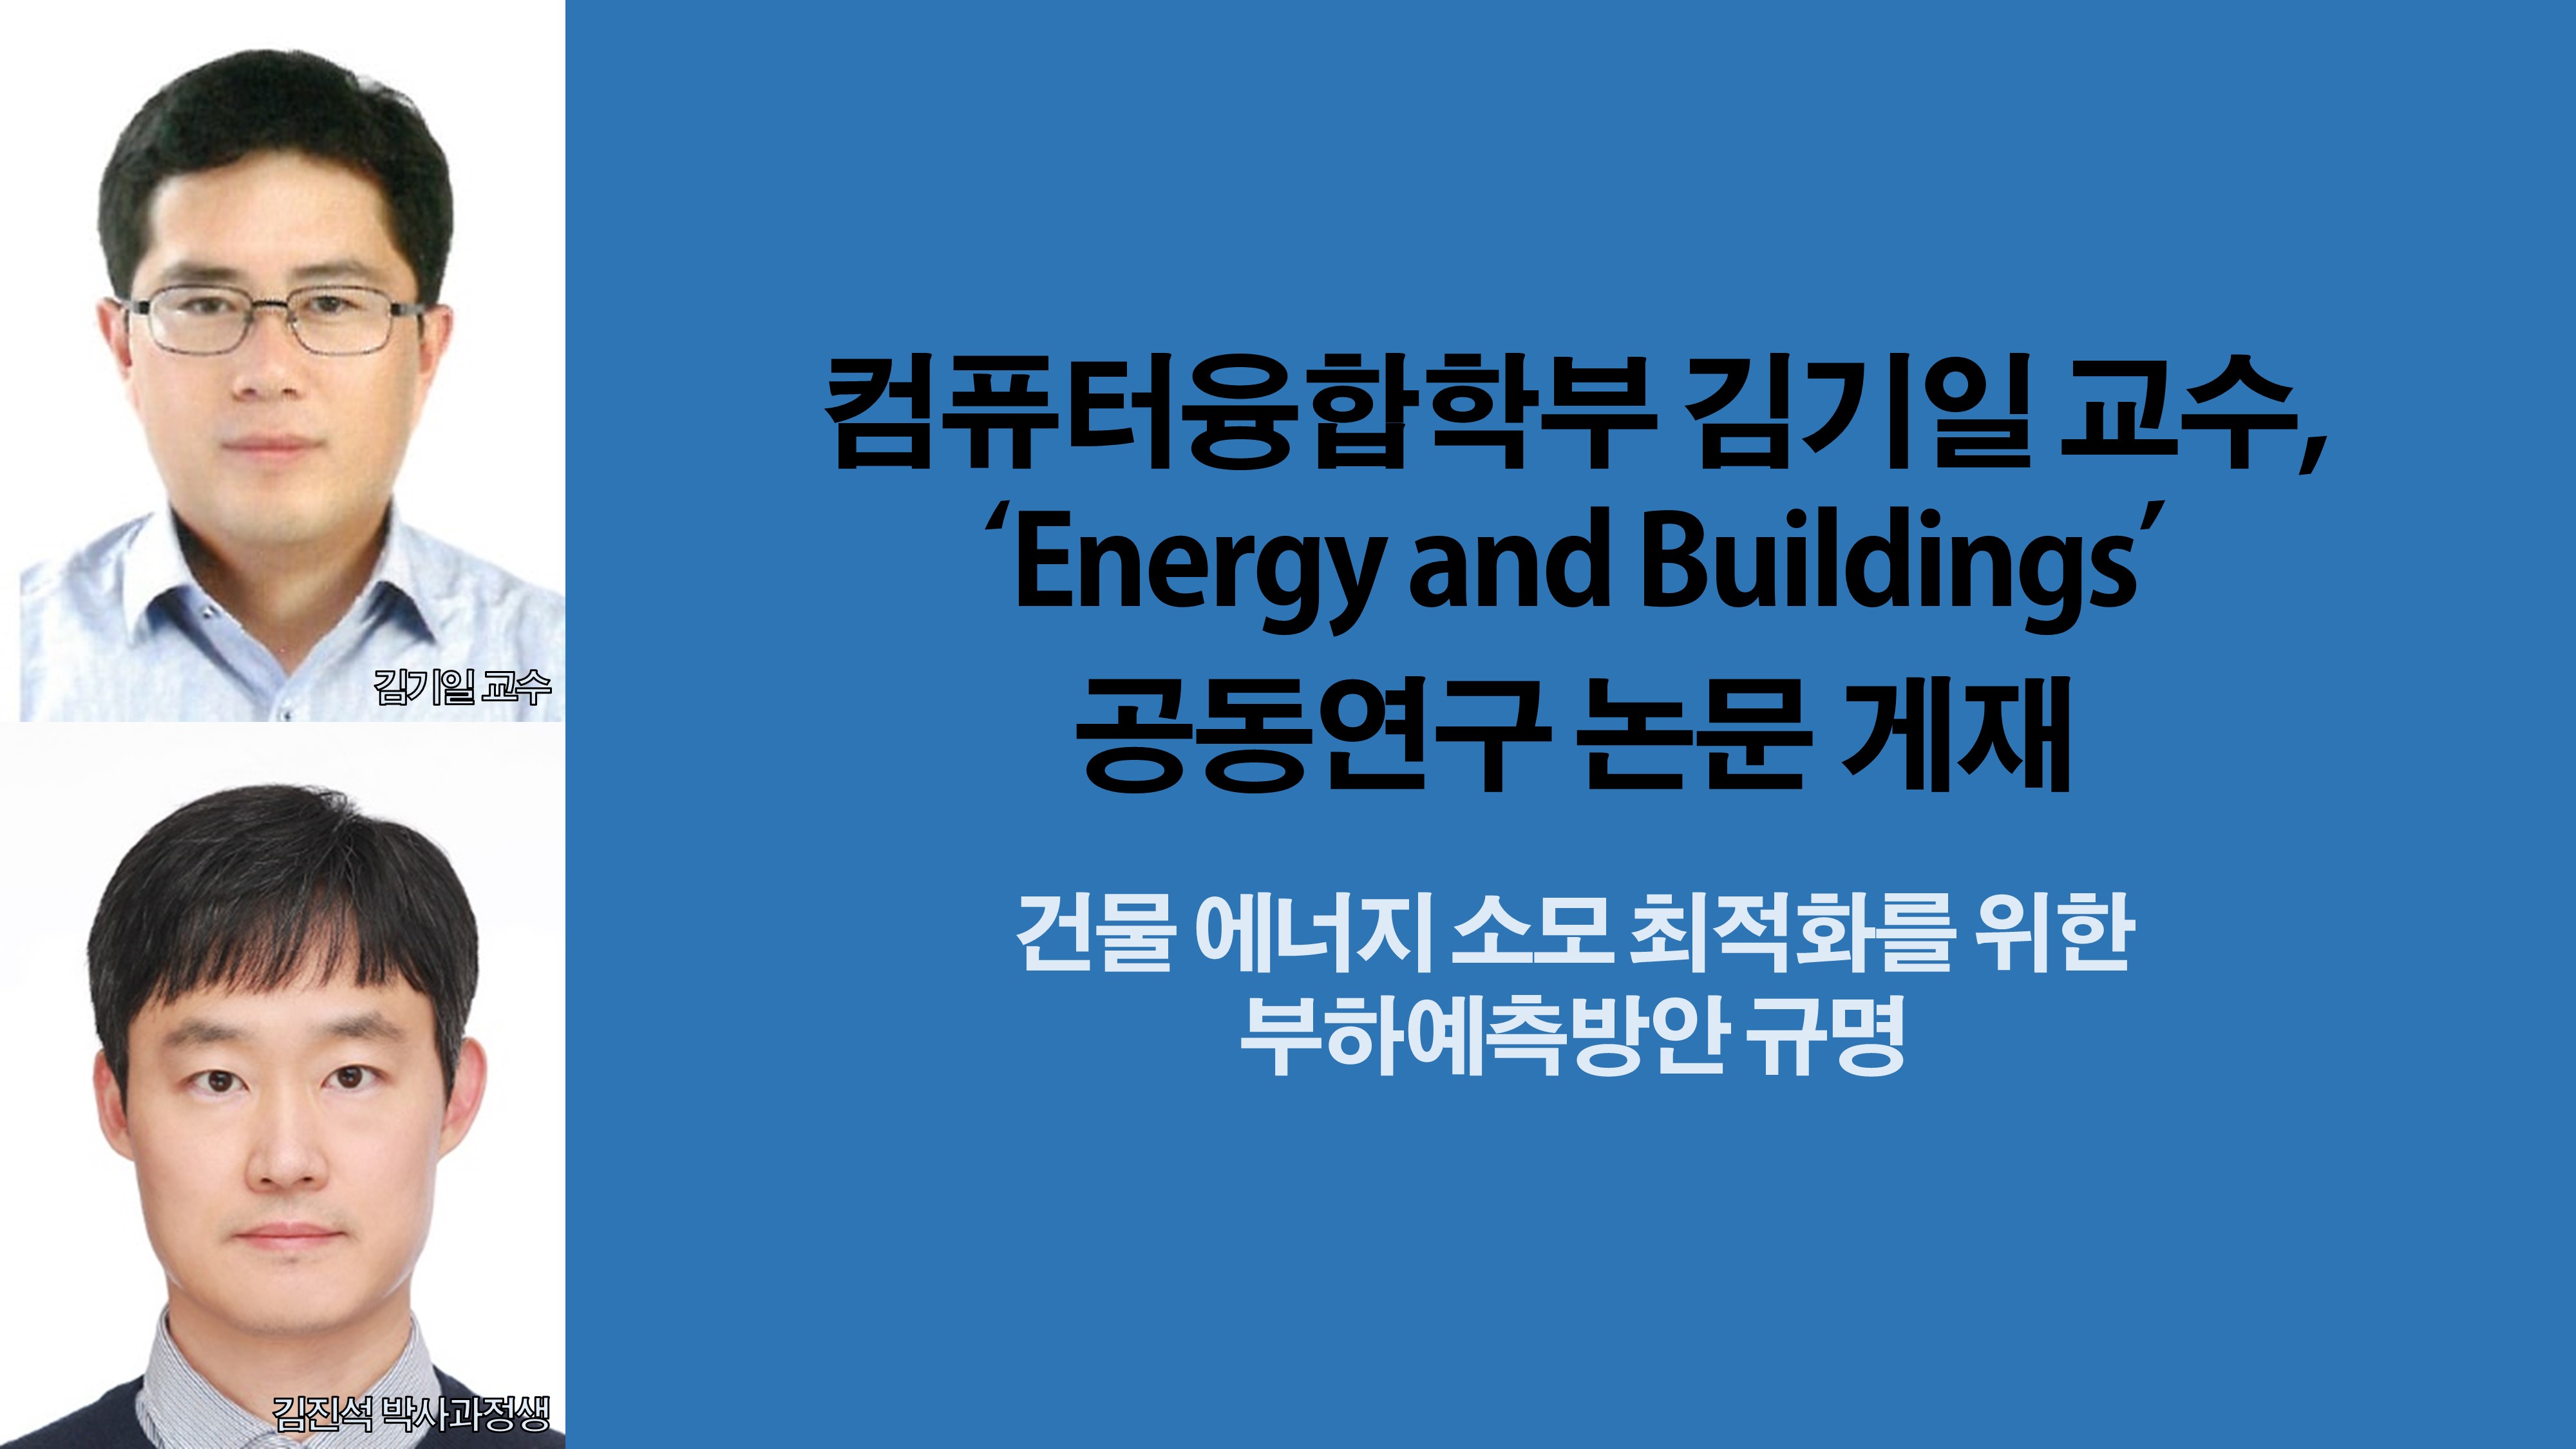 컴퓨터융합학부 김기일 교수, ‘Energy and Buildings’ 공동연구 논문 게재 사진